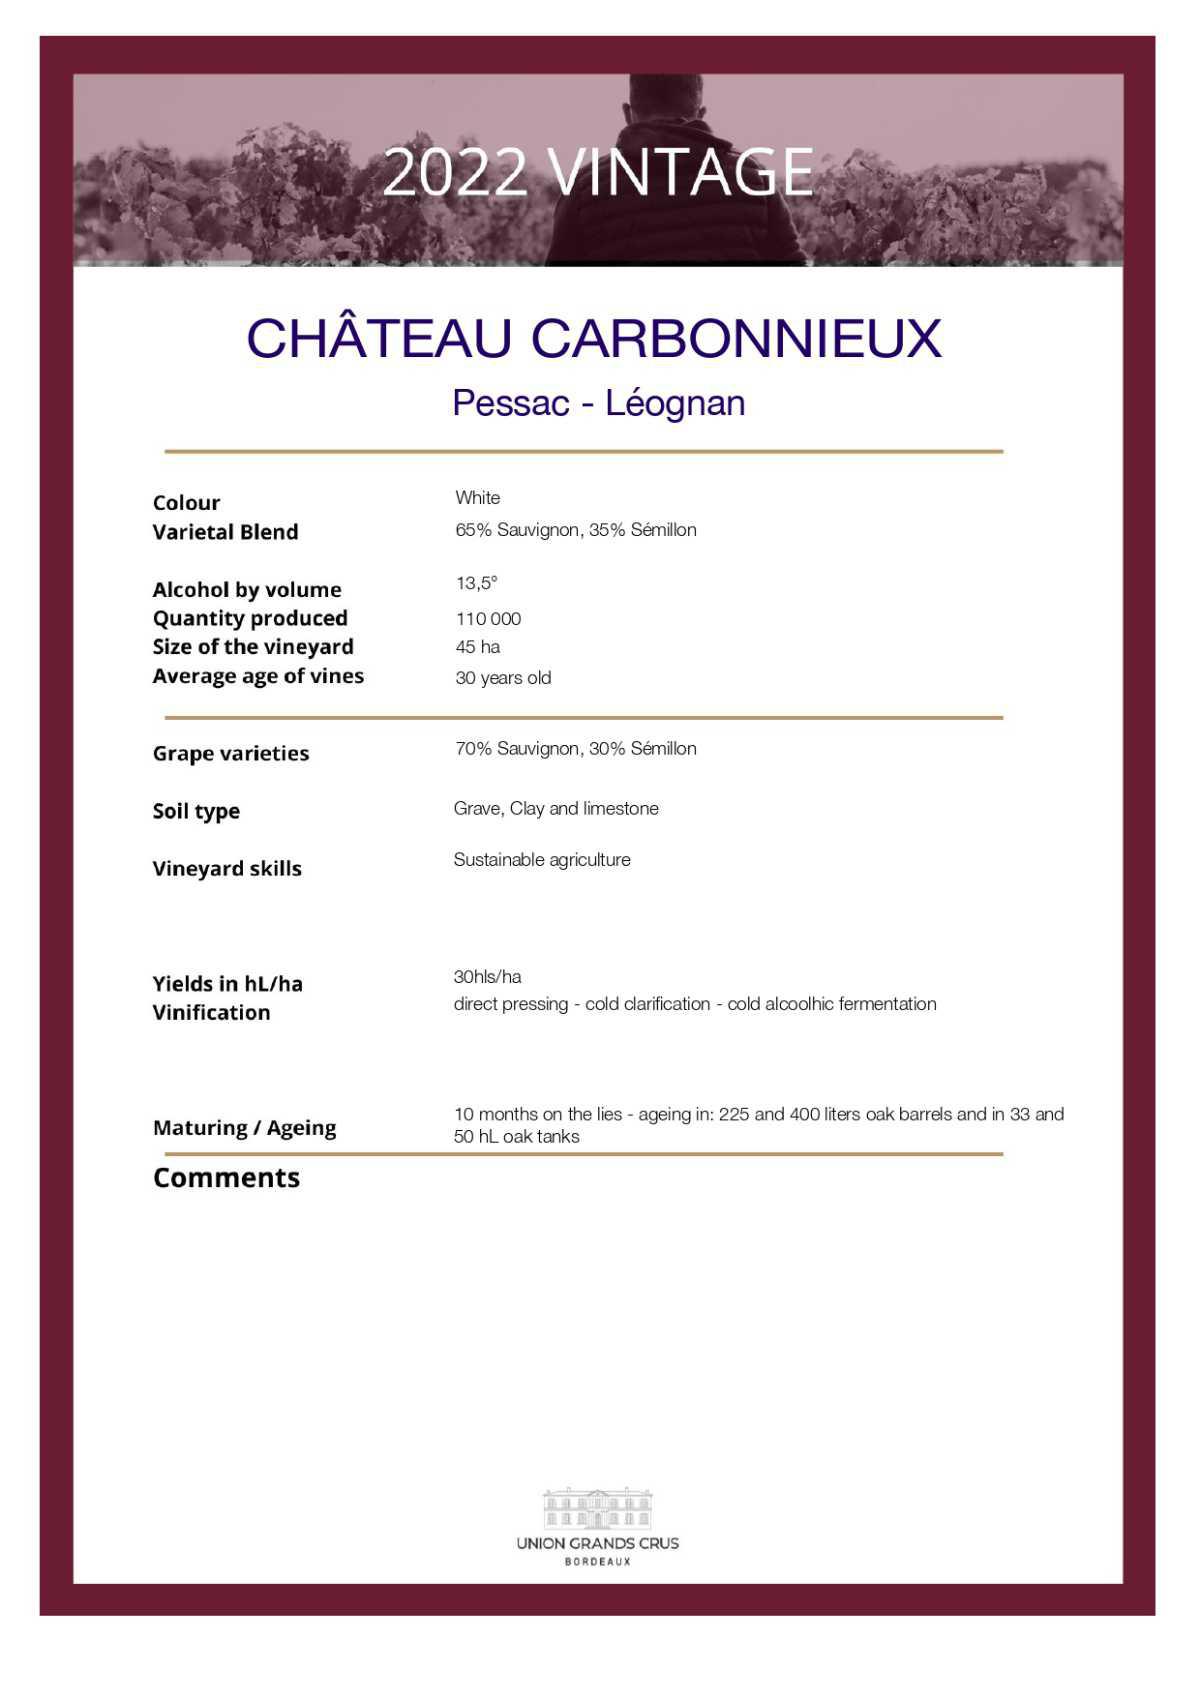  Château Carbonnieux - White